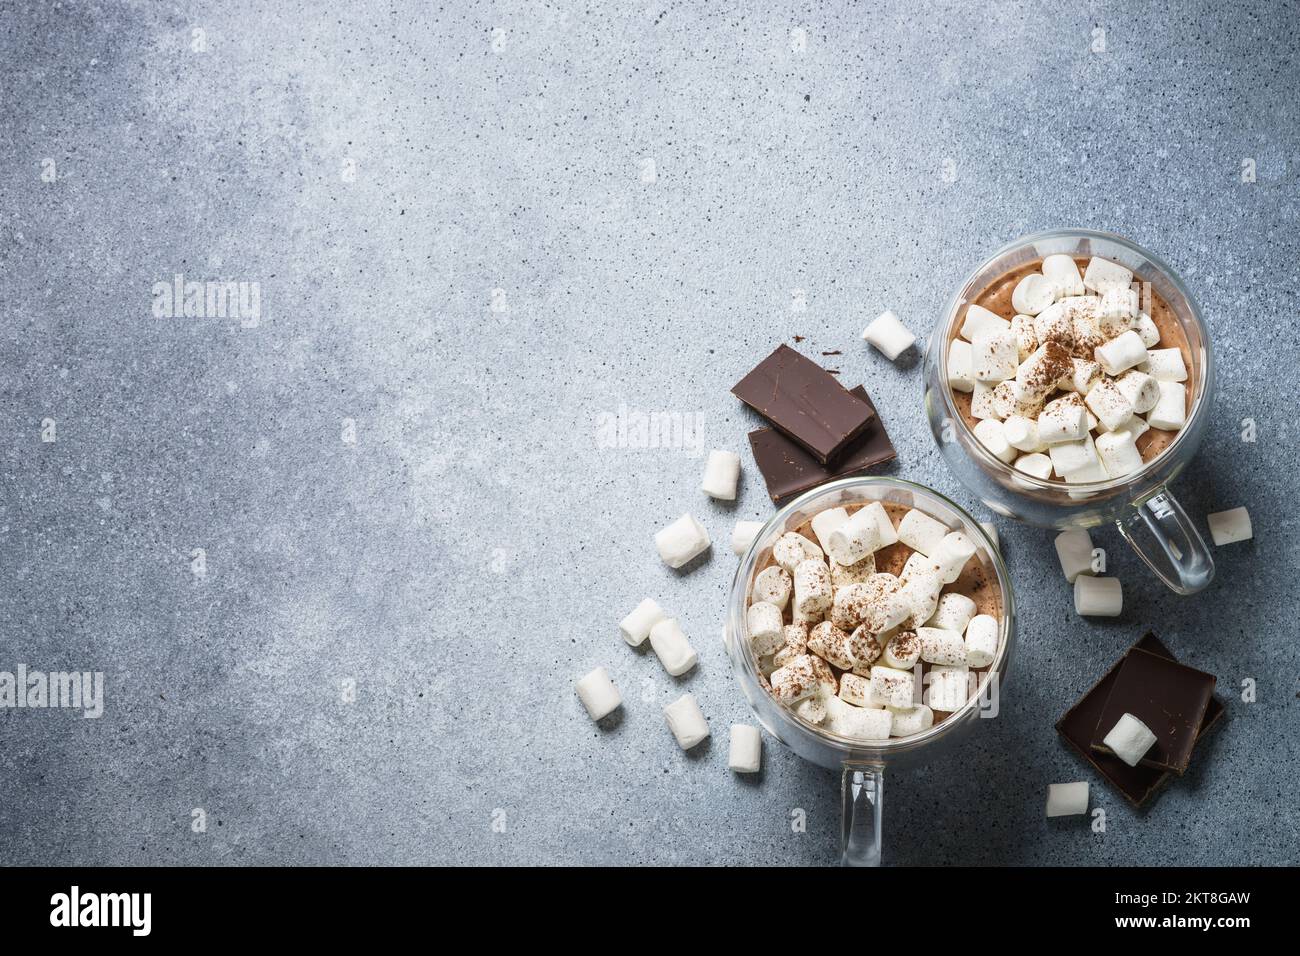 Chocolat chaud avec guimauve sur table en pierre. Banque D'Images